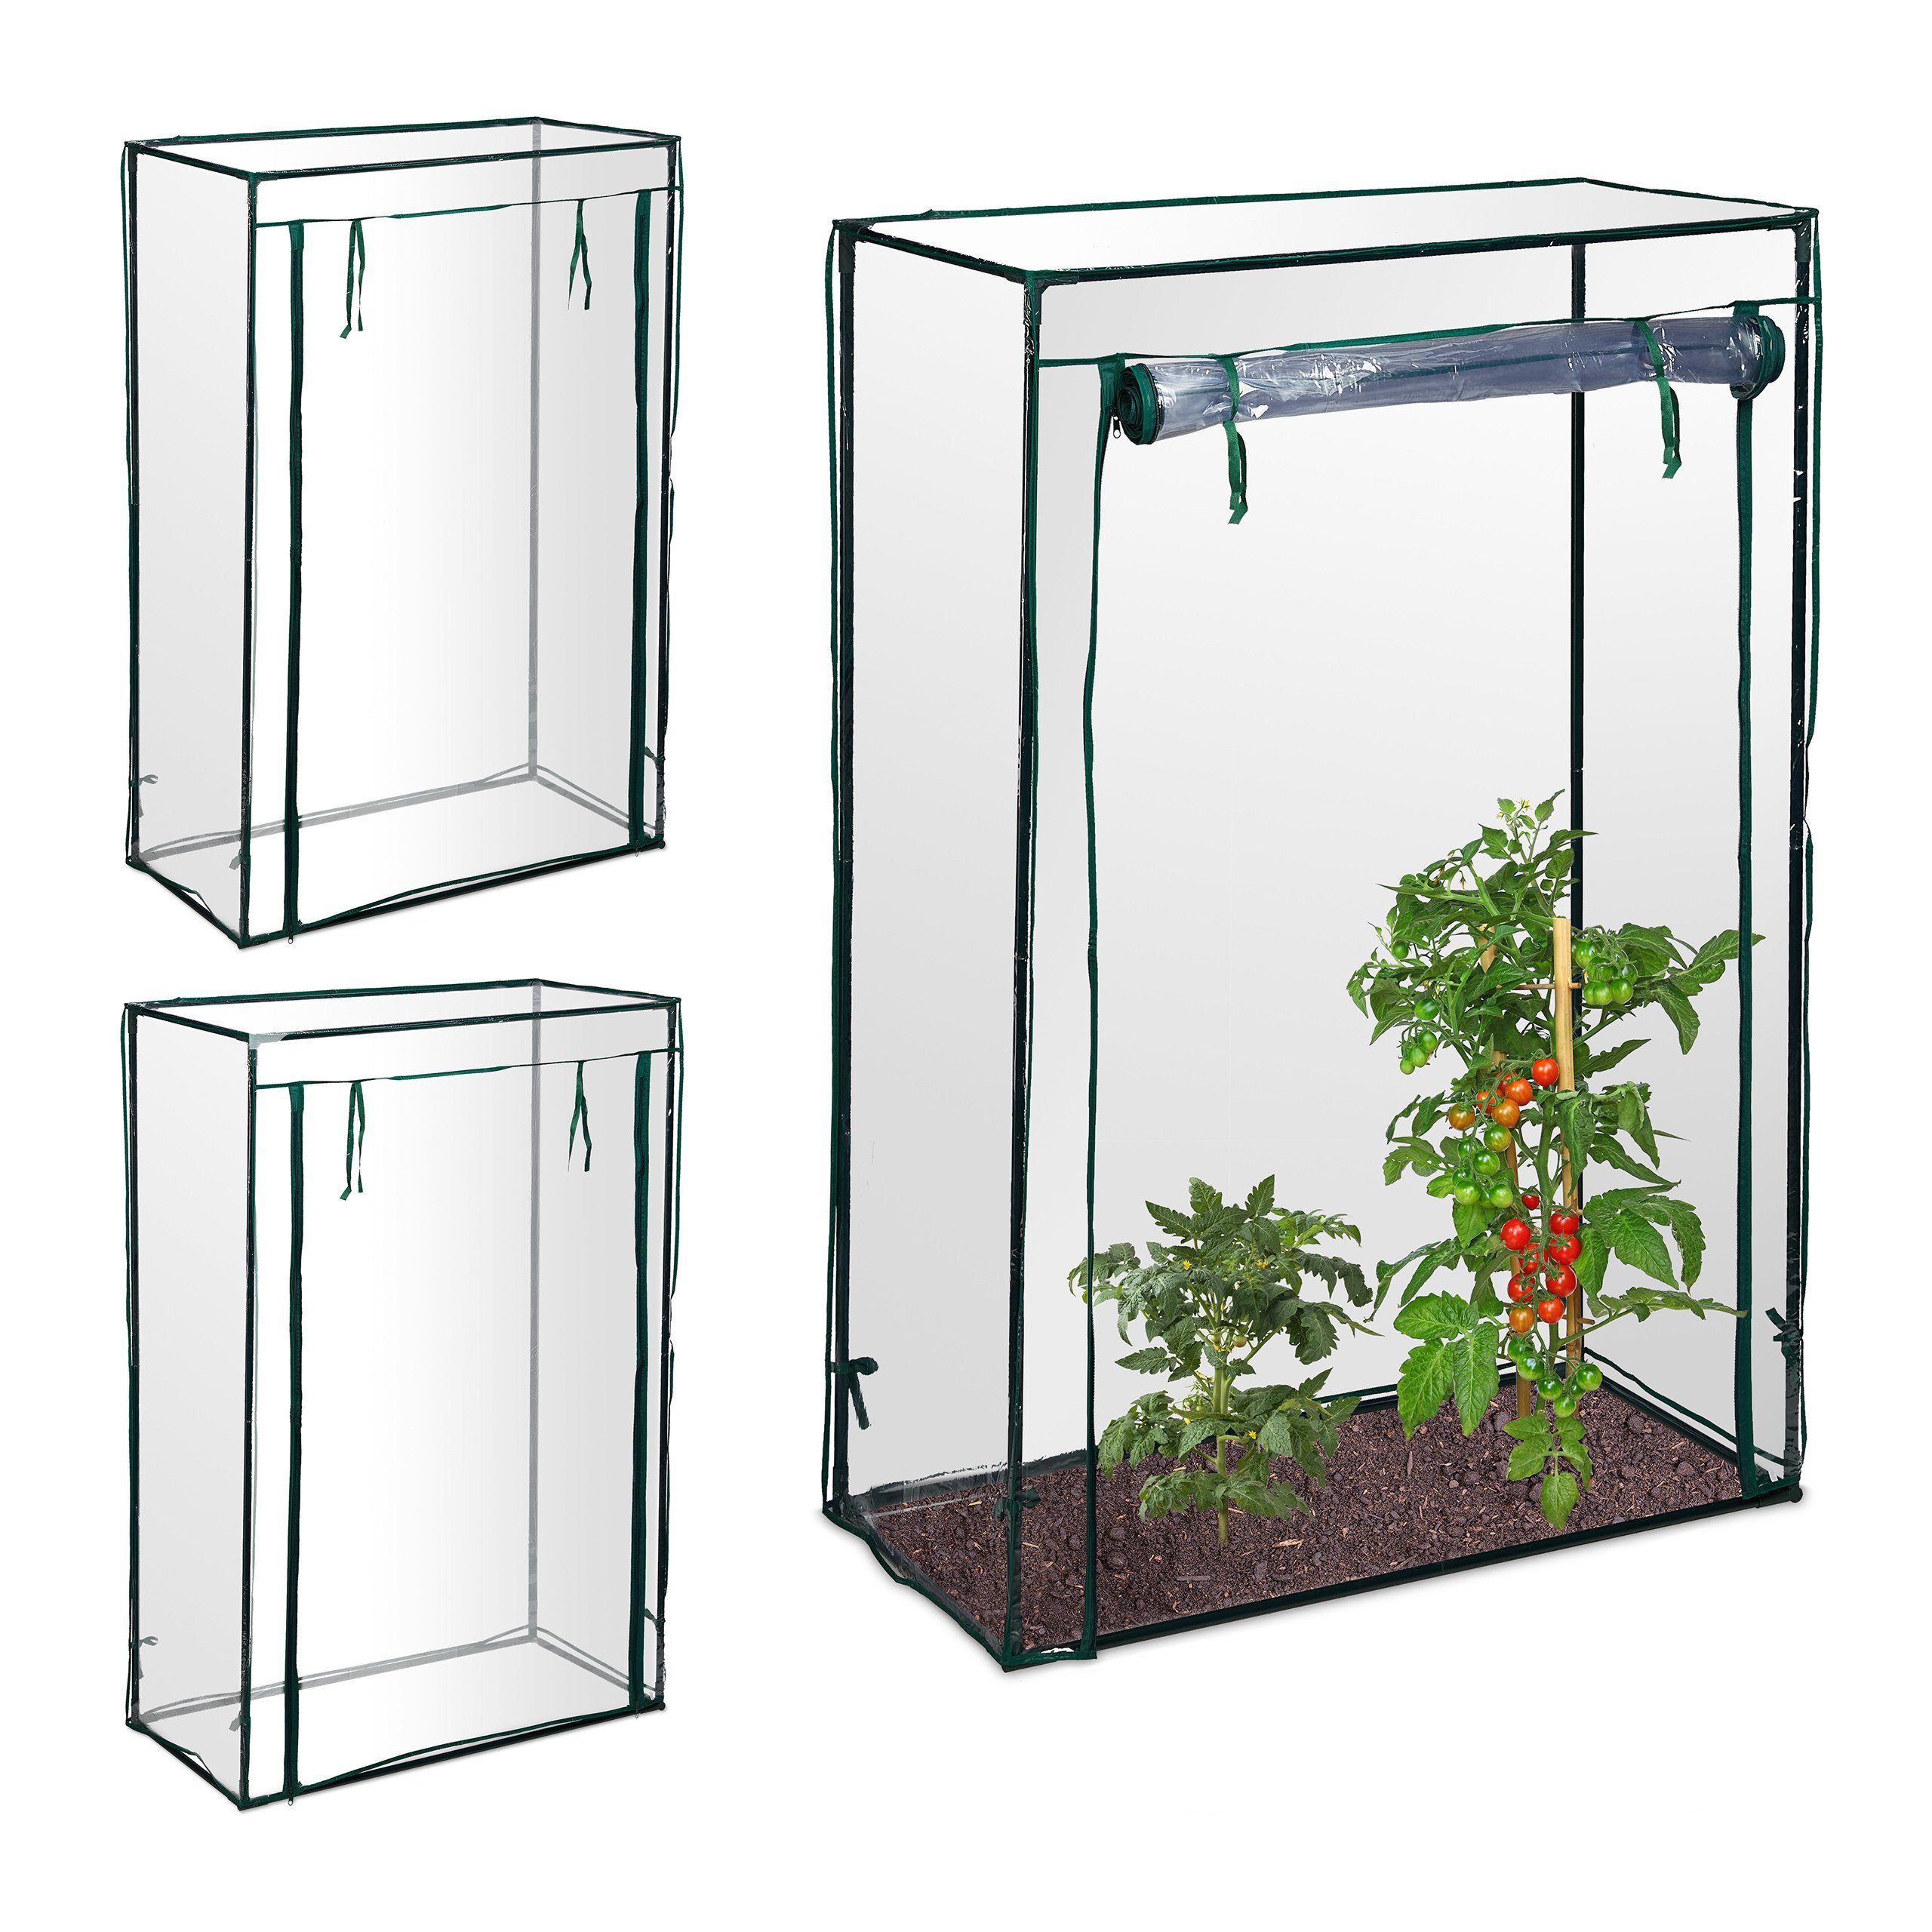 relaxdays Tomatengewächshaus 3 x Tomatengewächshaus PVC grün|weiß | Rabatt: 34%